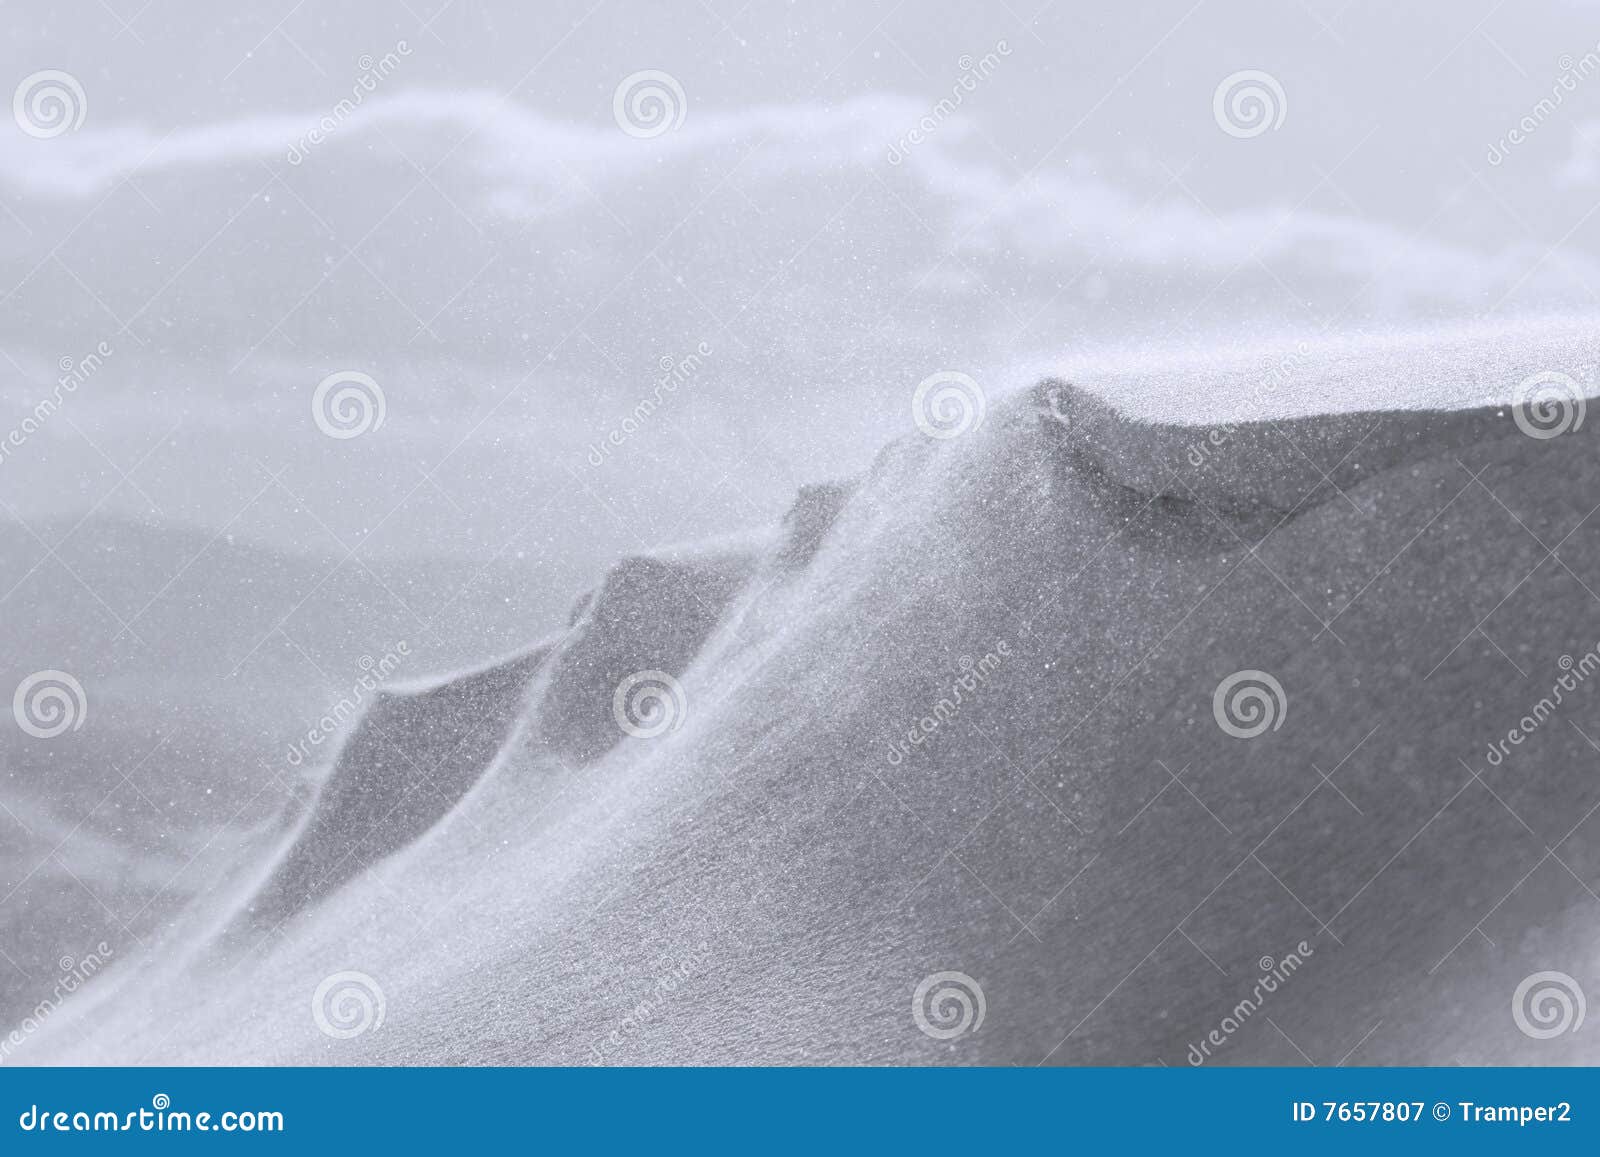 Snowdrift. A neve cobriu a paisagem da montanha e da tempestade de neve